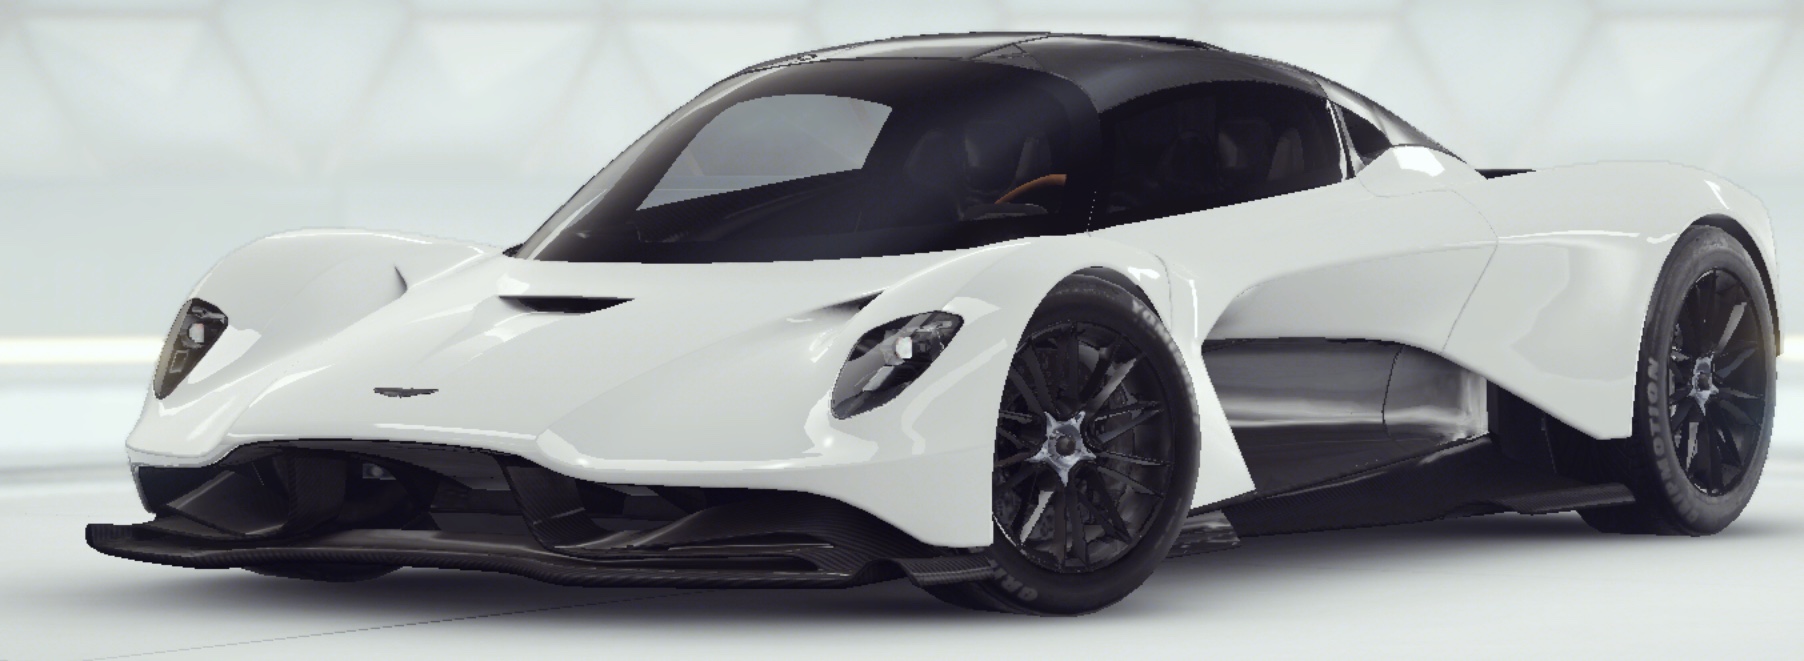 Aston Martin Valhalla Concept Car | Asphalt Wiki | Fandom